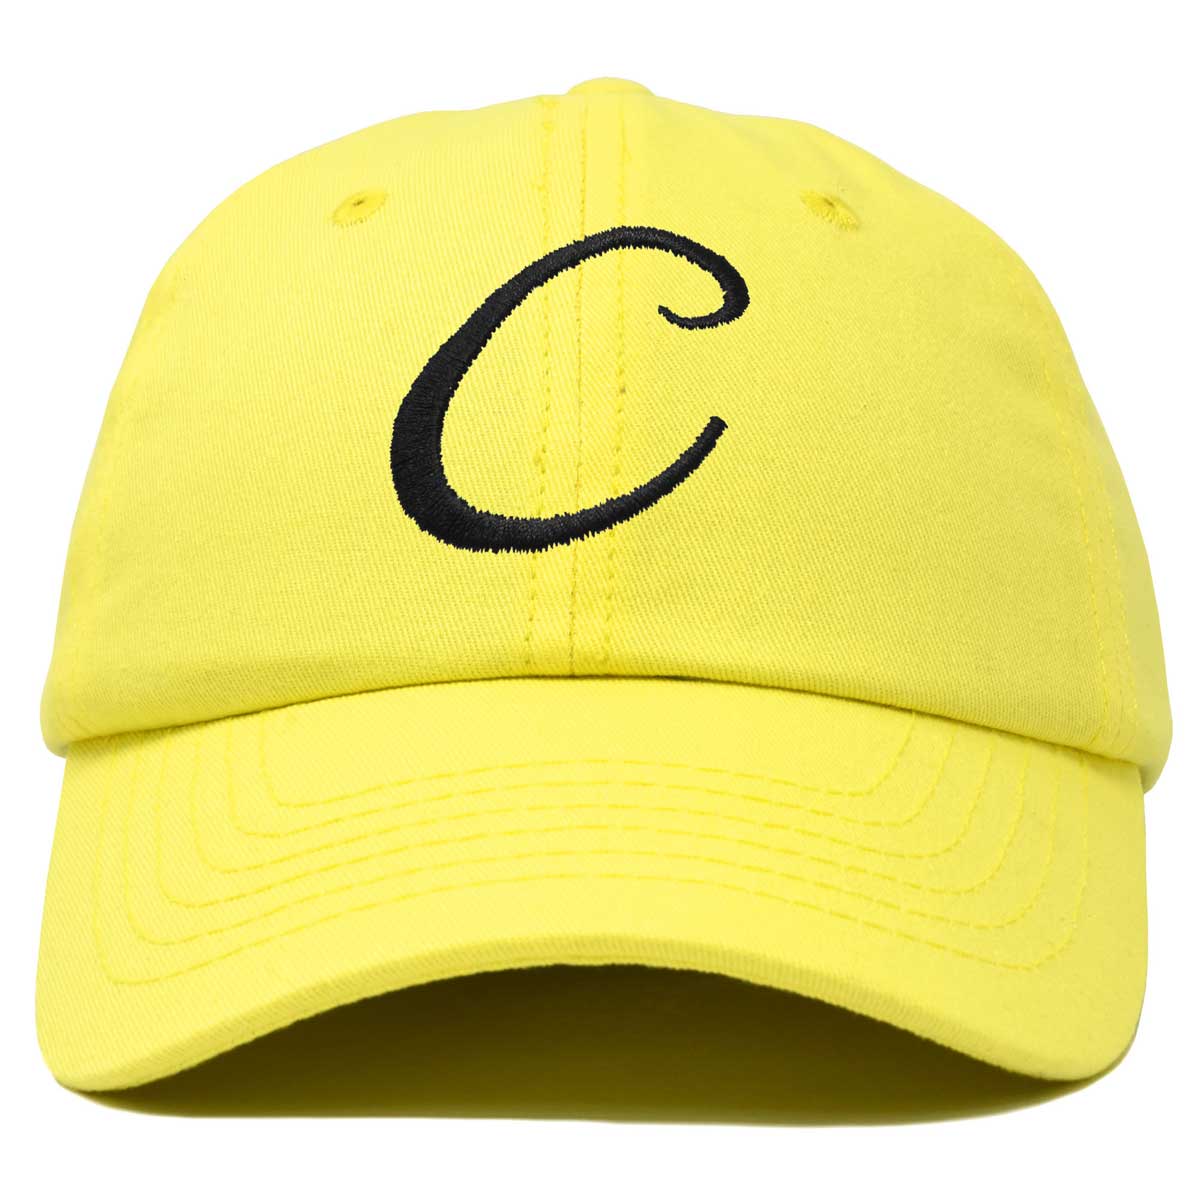 Dalix Initial Letter C Hat